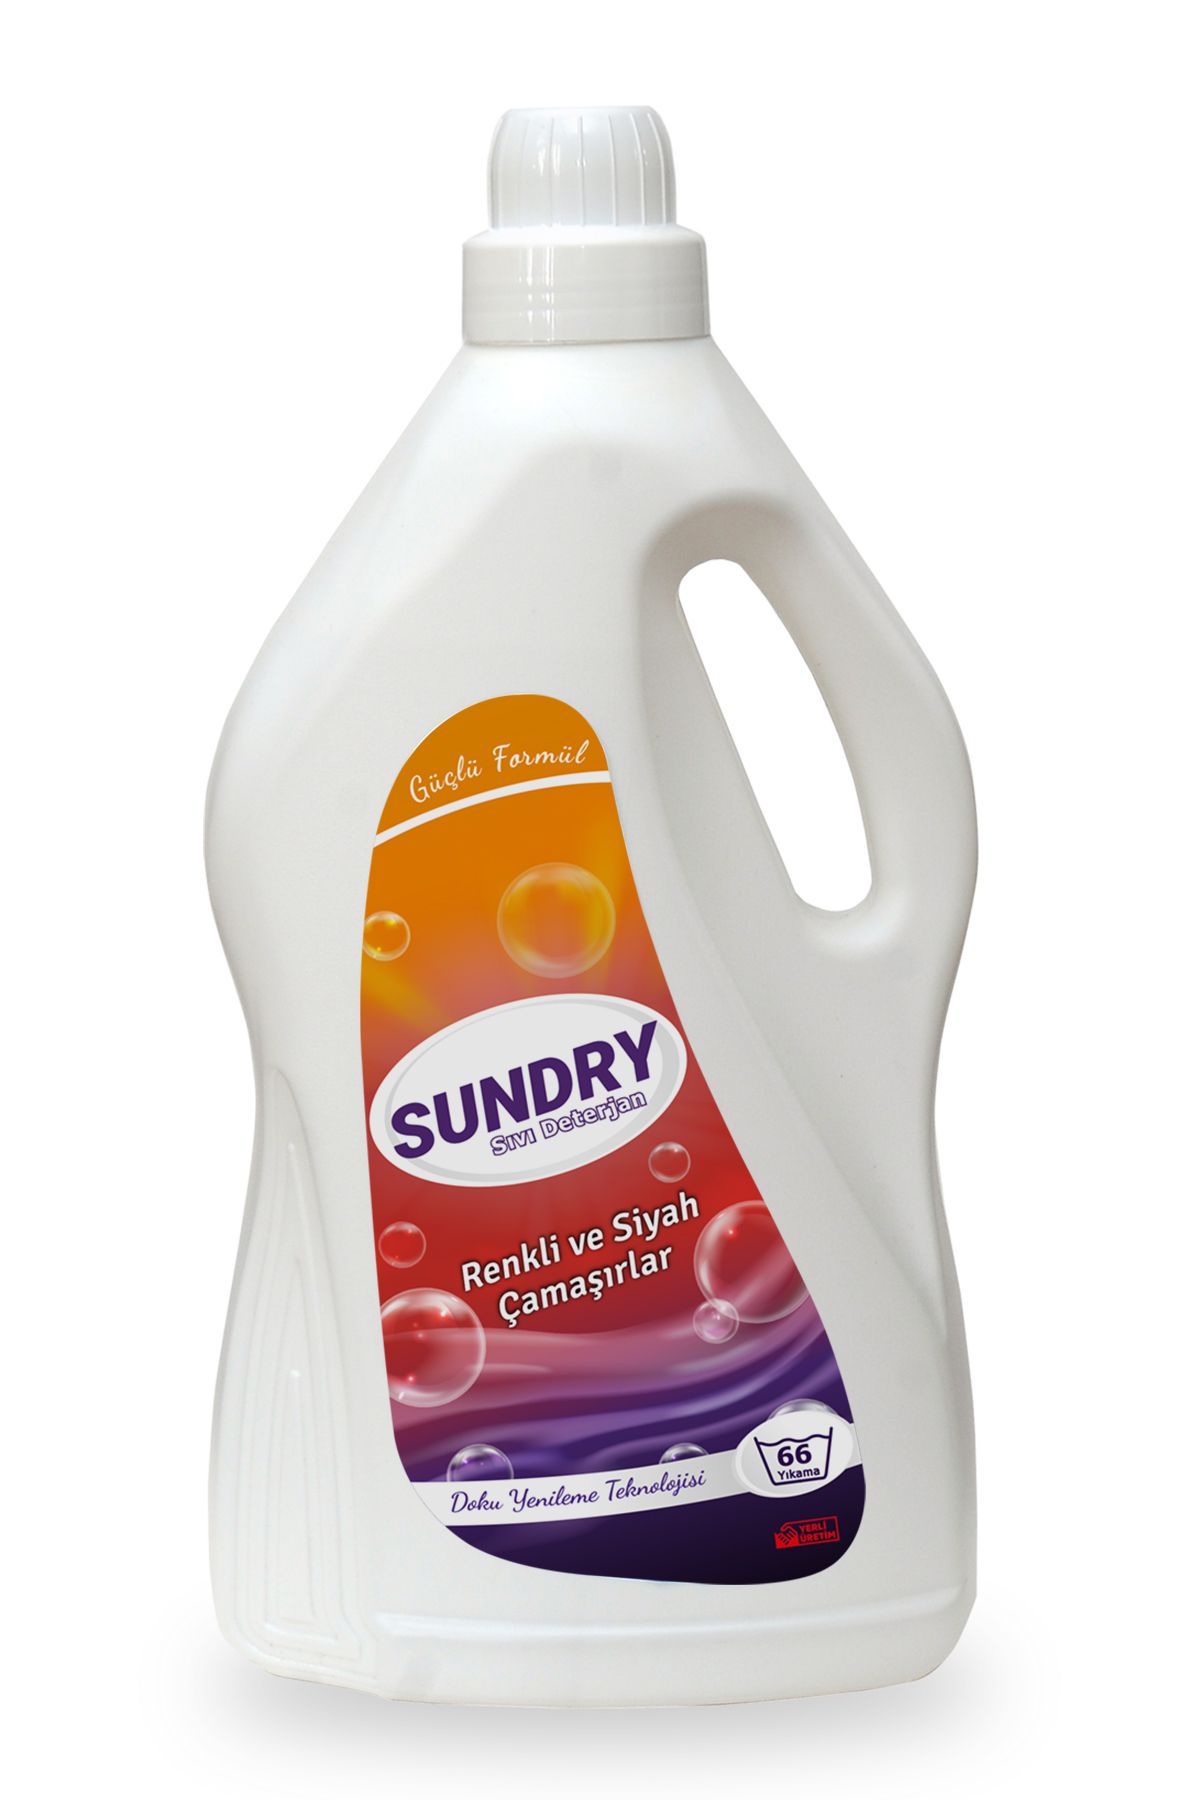 Sundry Sıvı Çamaşır Deterjanı Renkli ve Siyahlar için 4000ml - 66 Yıkama